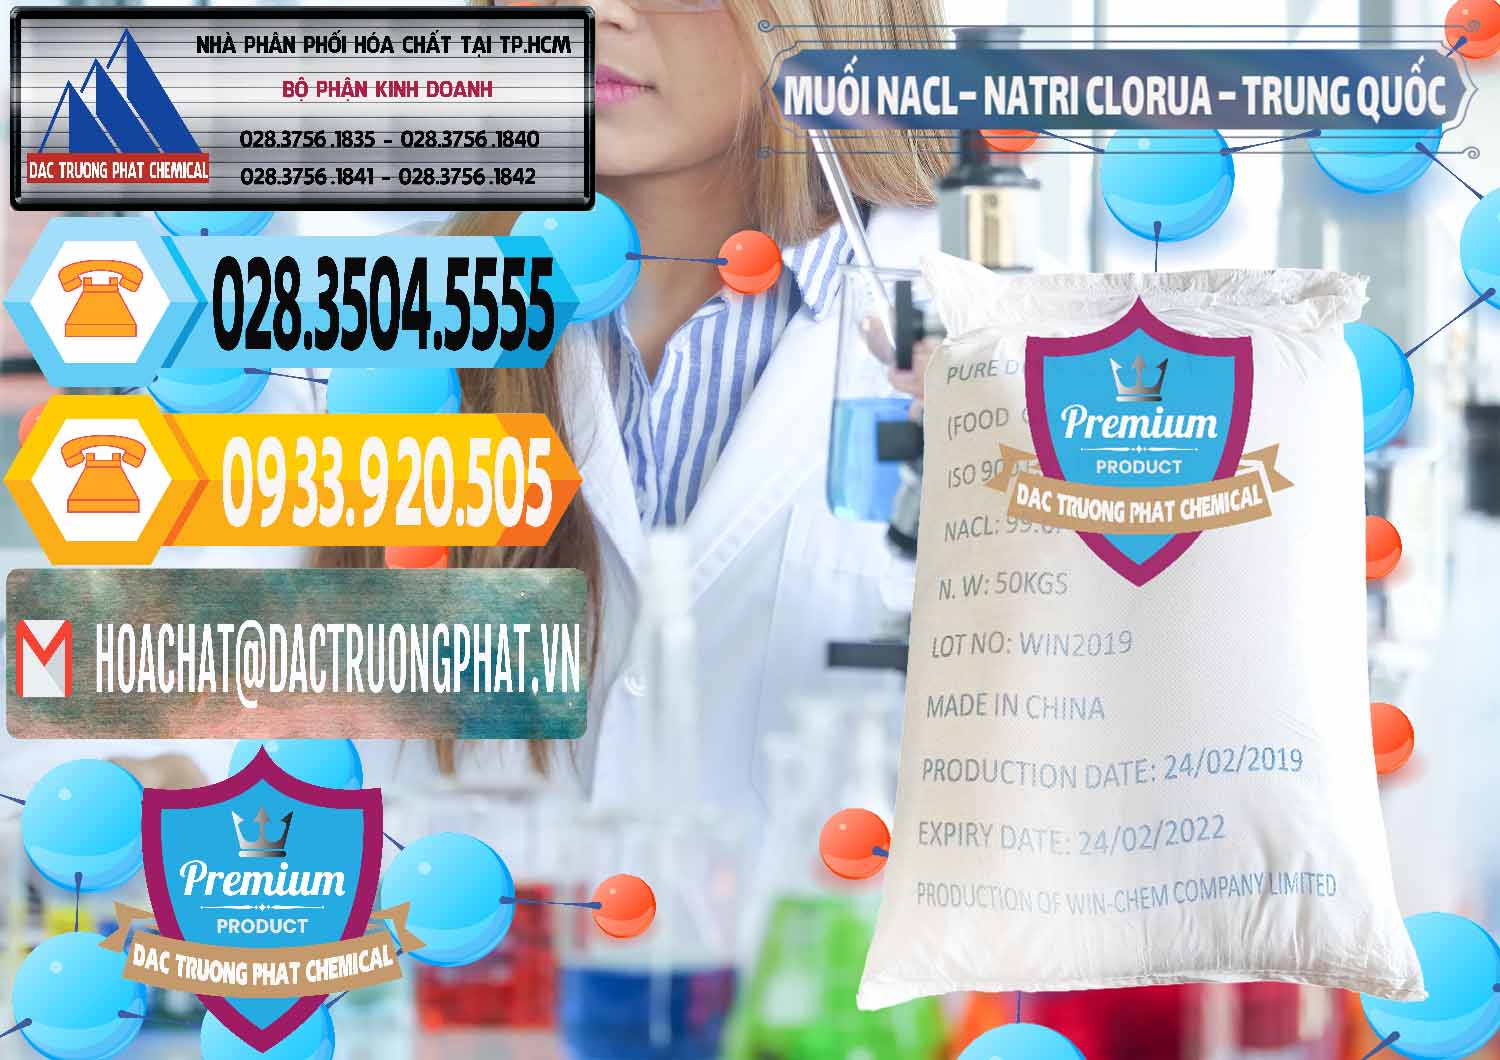 Nơi bán và cung cấp Muối NaCL – Sodium Chloride Trung Quốc China - 0097 - Công ty bán & cung cấp hóa chất tại TP.HCM - hoachattayrua.net